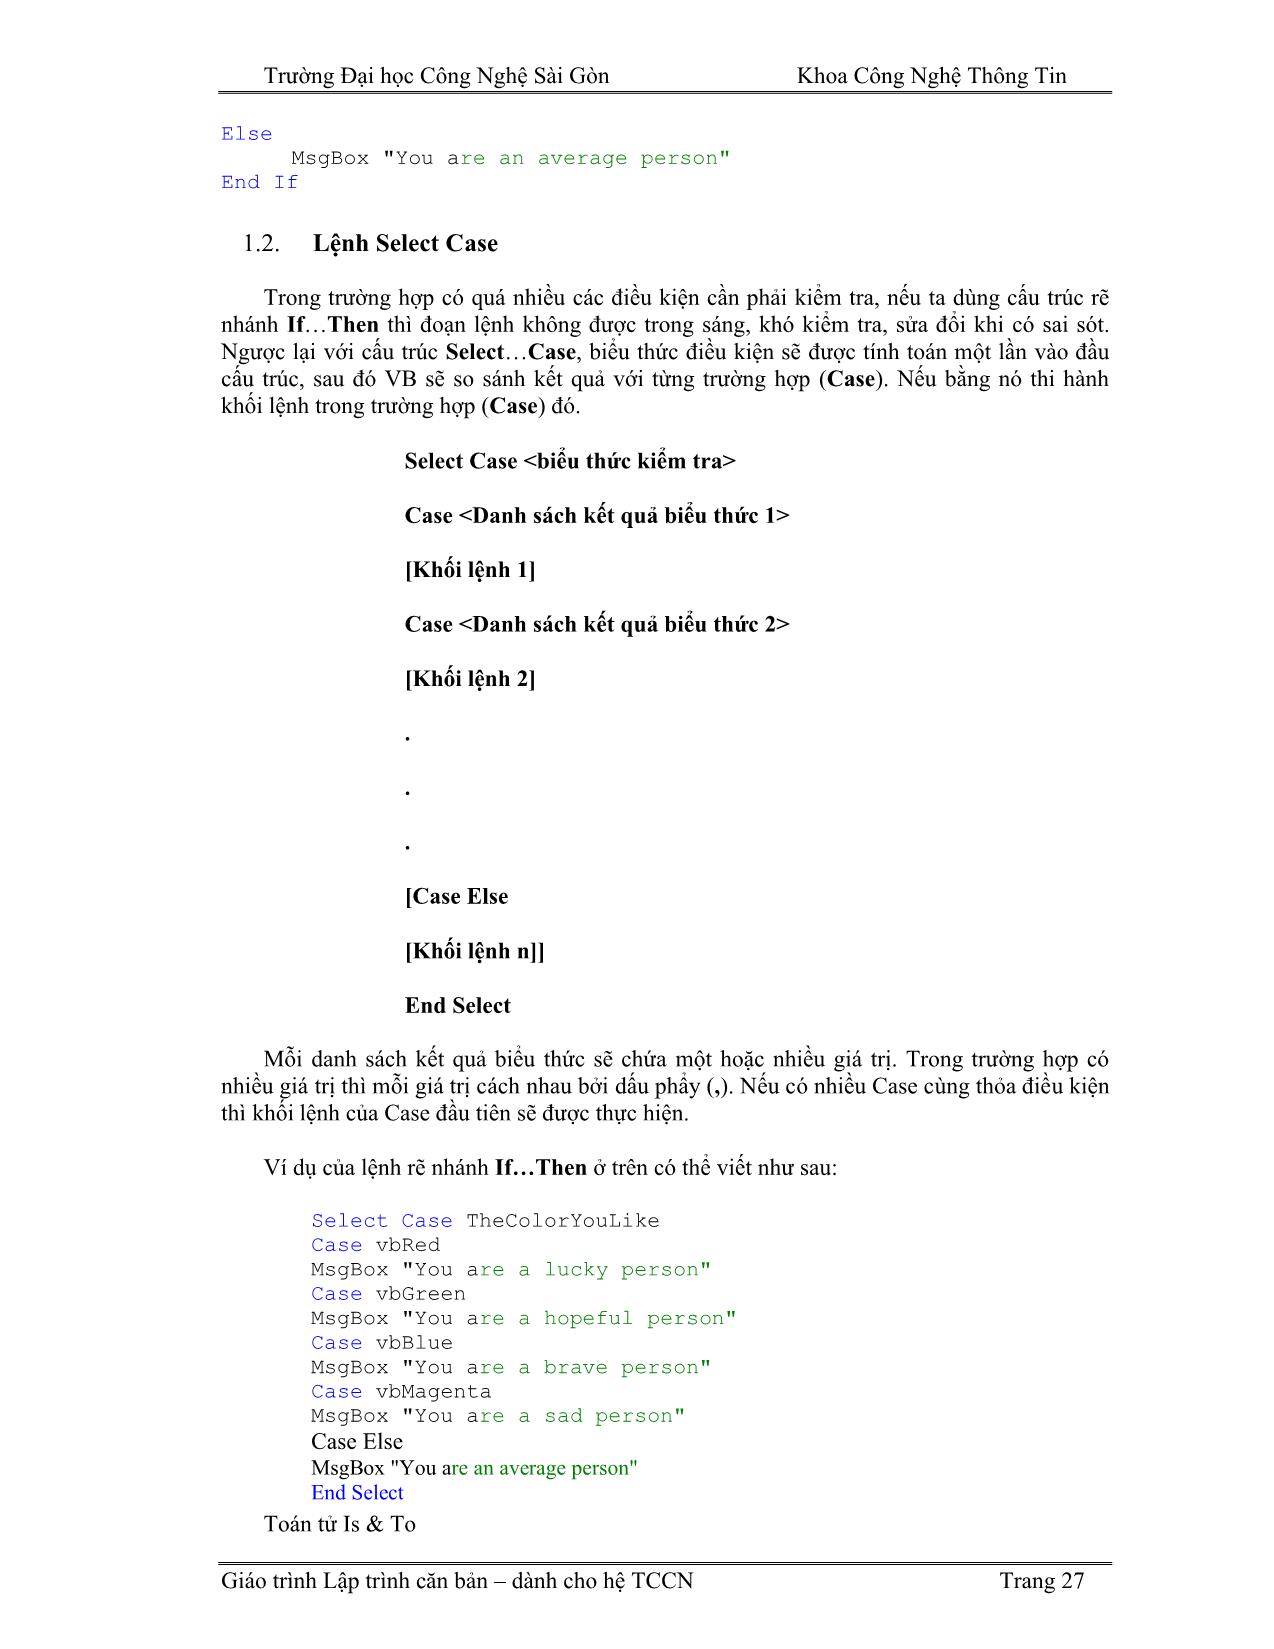 Giáo trình Lập trình căn bản Visual Basic (Phần 2) trang 2